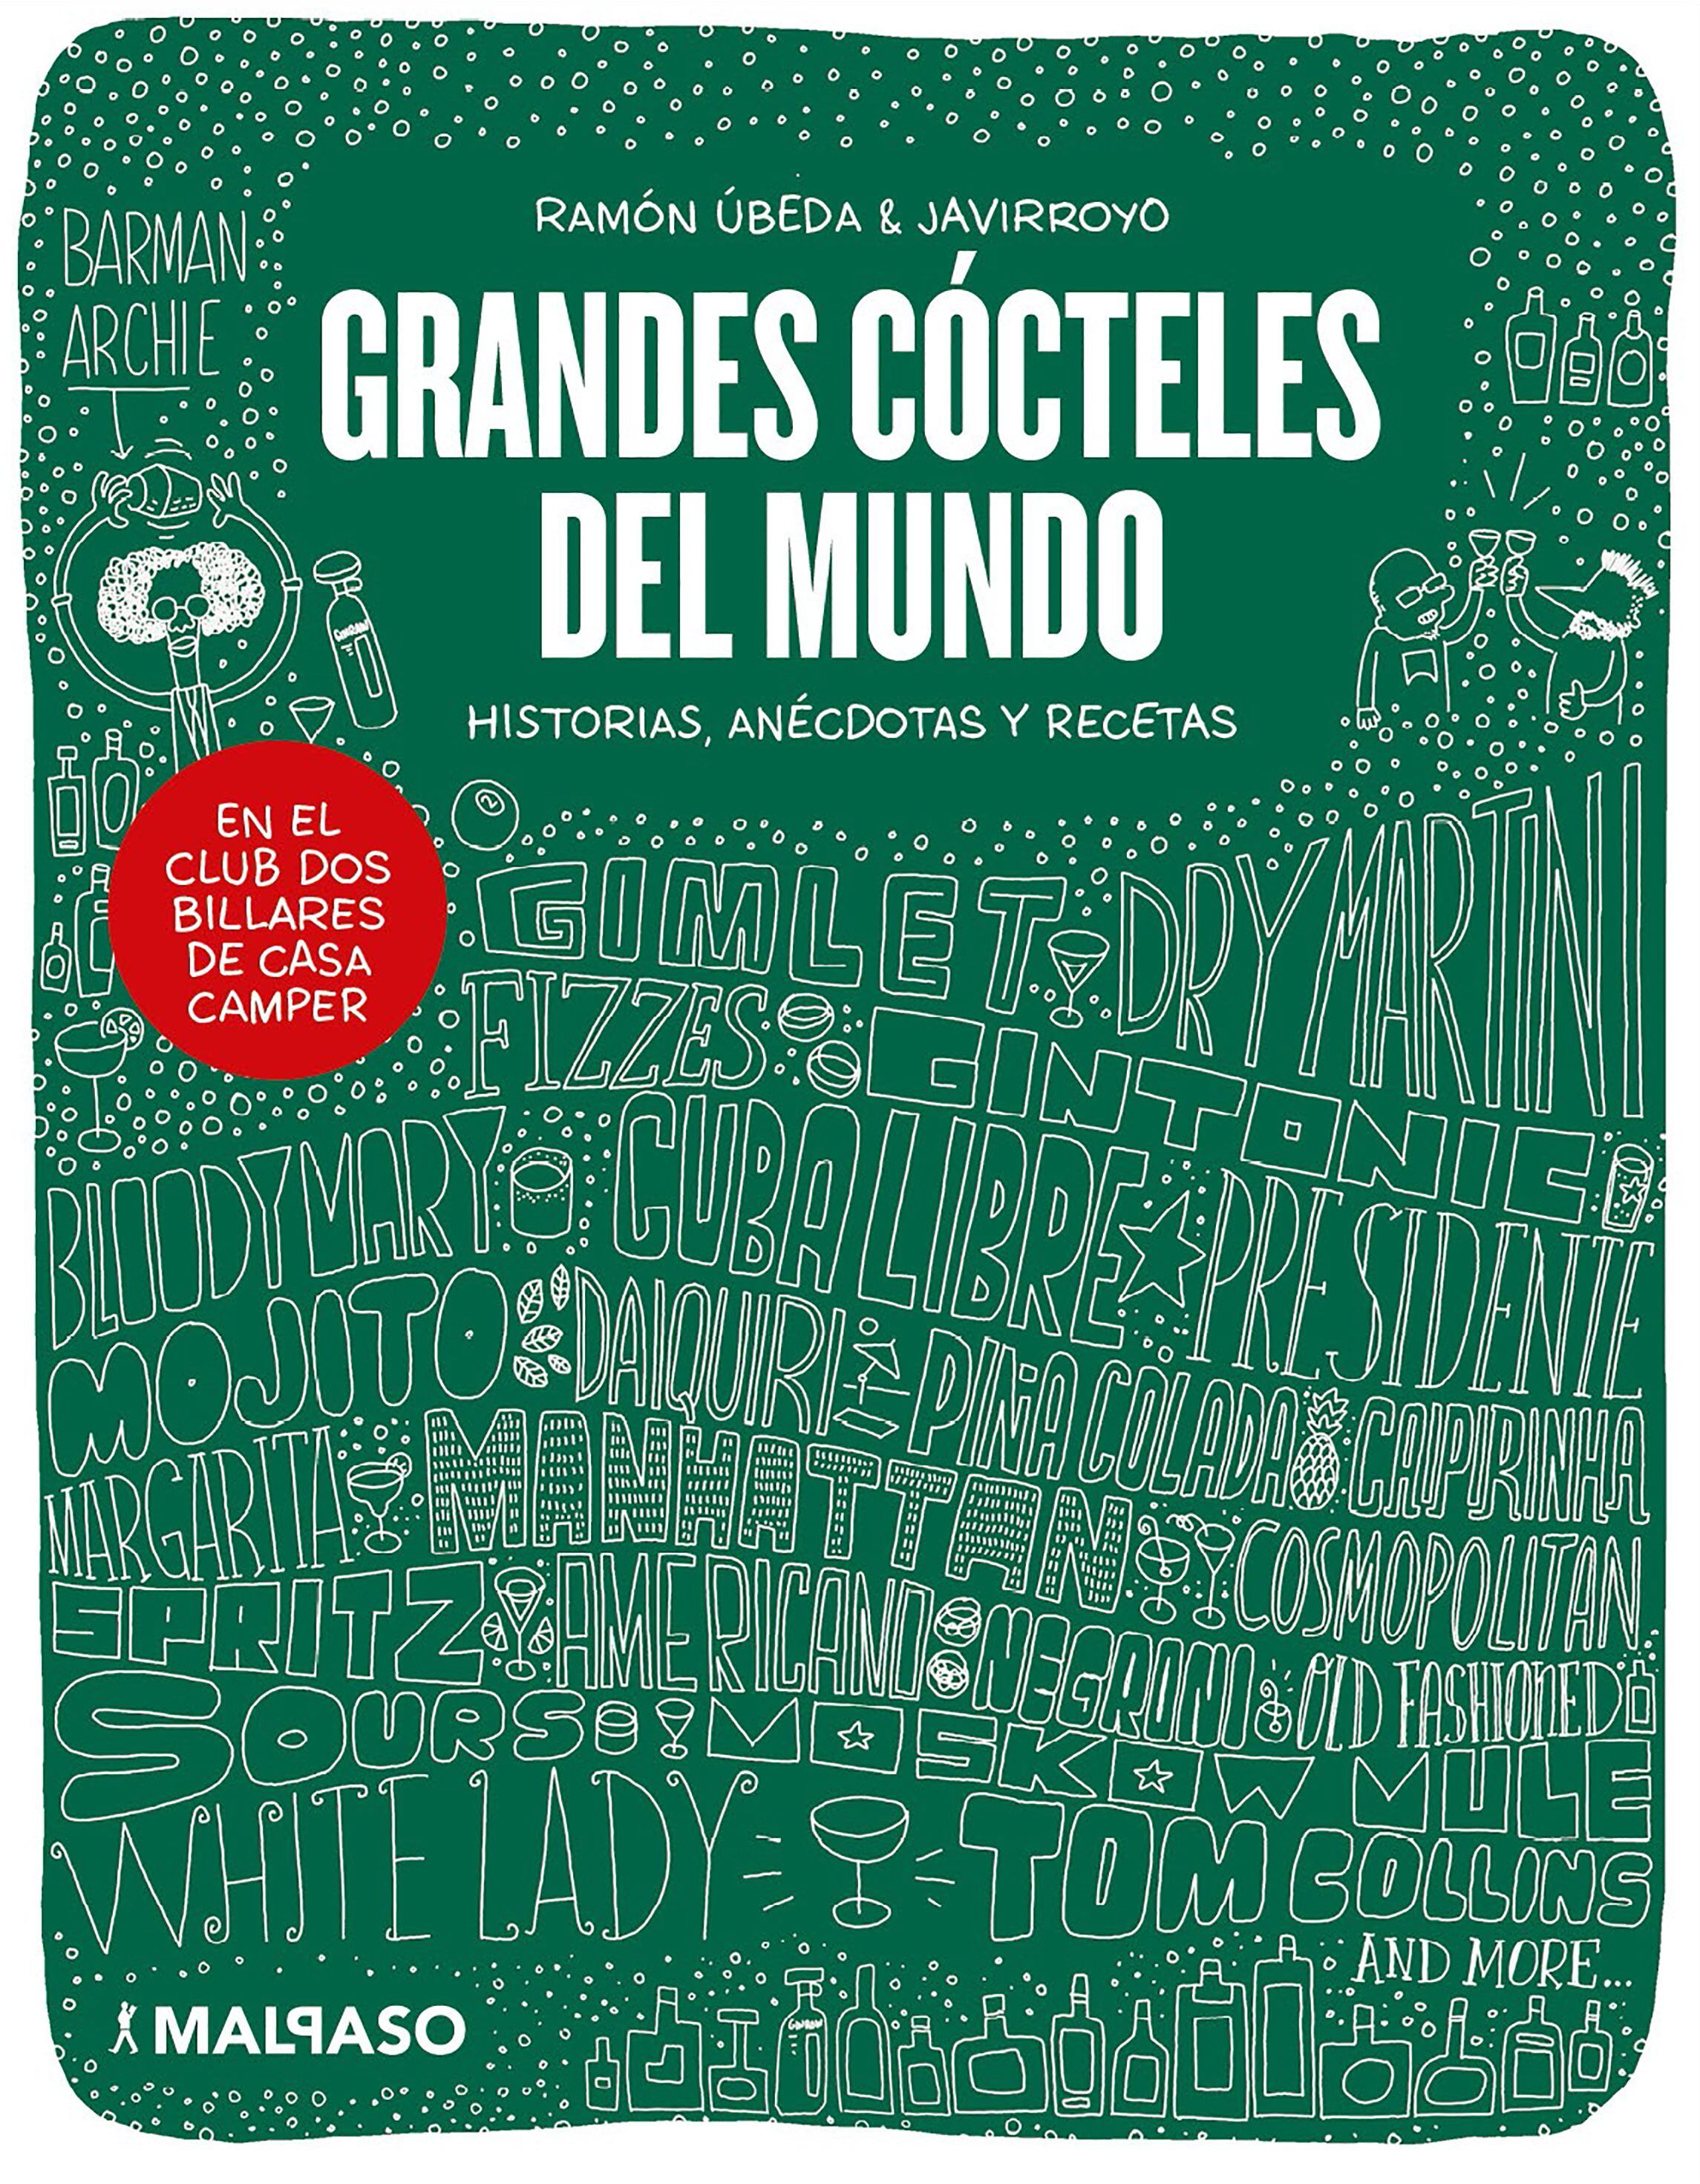 Portada de Grandes cócteles del mundo, de Ramón Úbeda & Javirroyo (Editorial Malpaso).